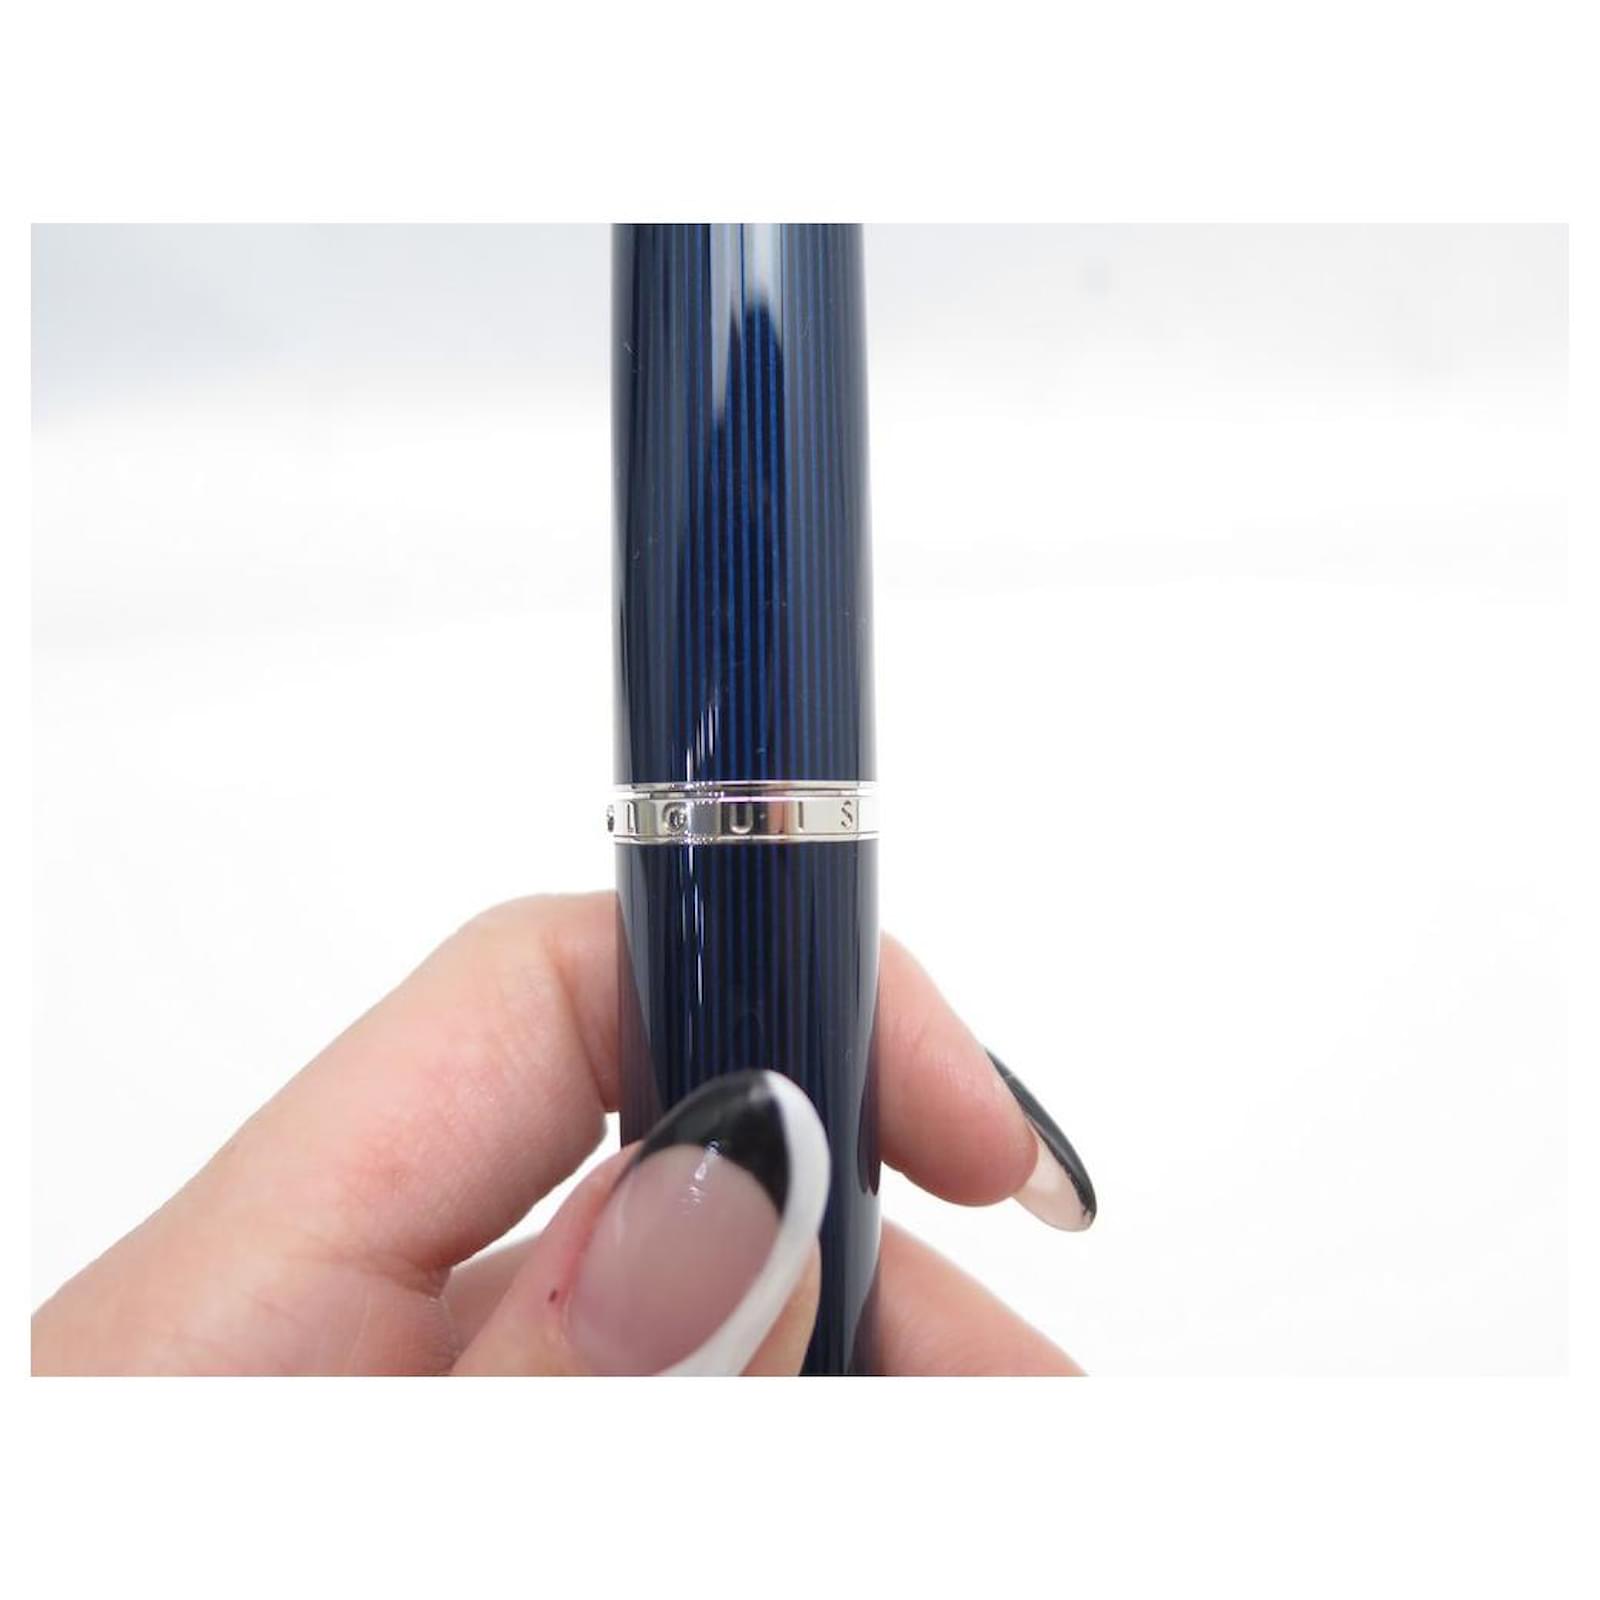 Louis Vuitton Cargo Fountain Pens - Blue Lacquer